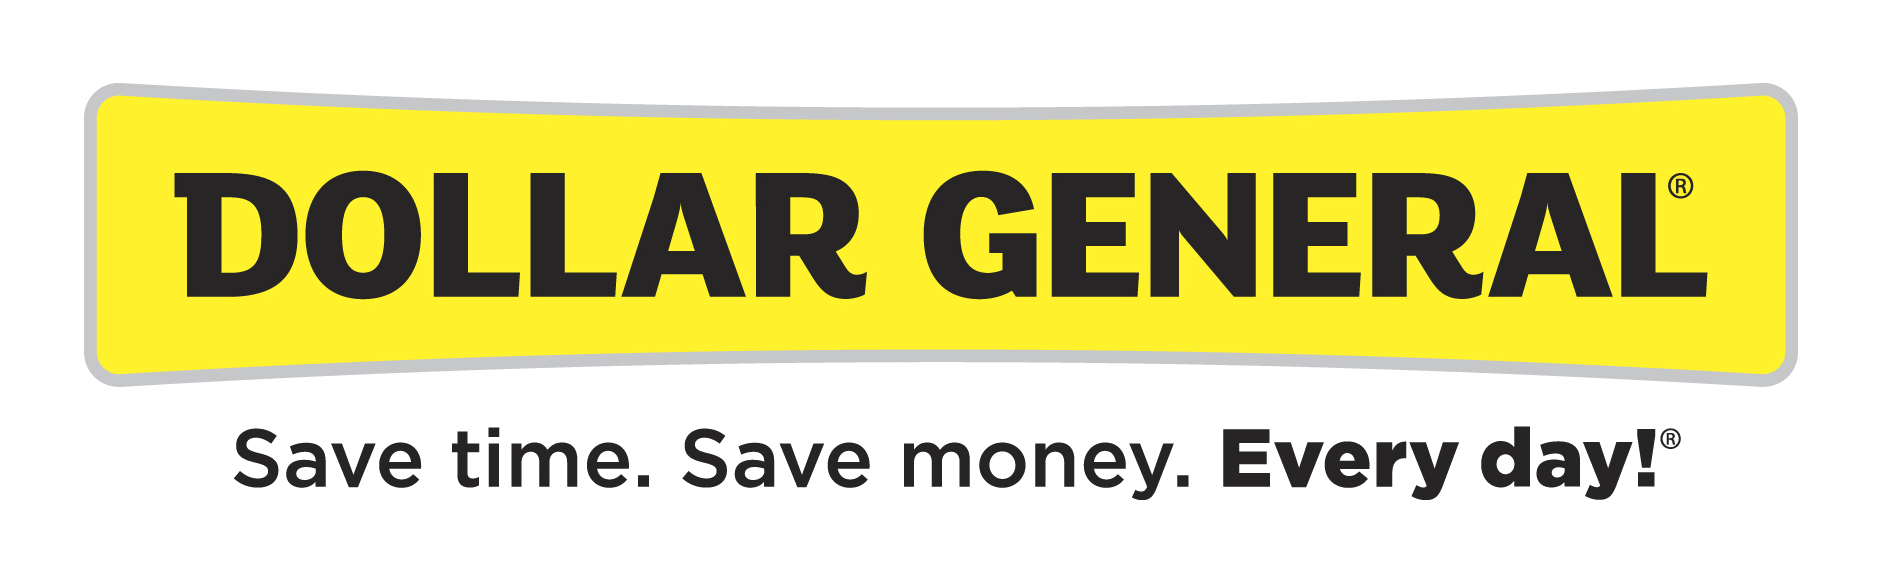 Dollar General Logo PNG Image